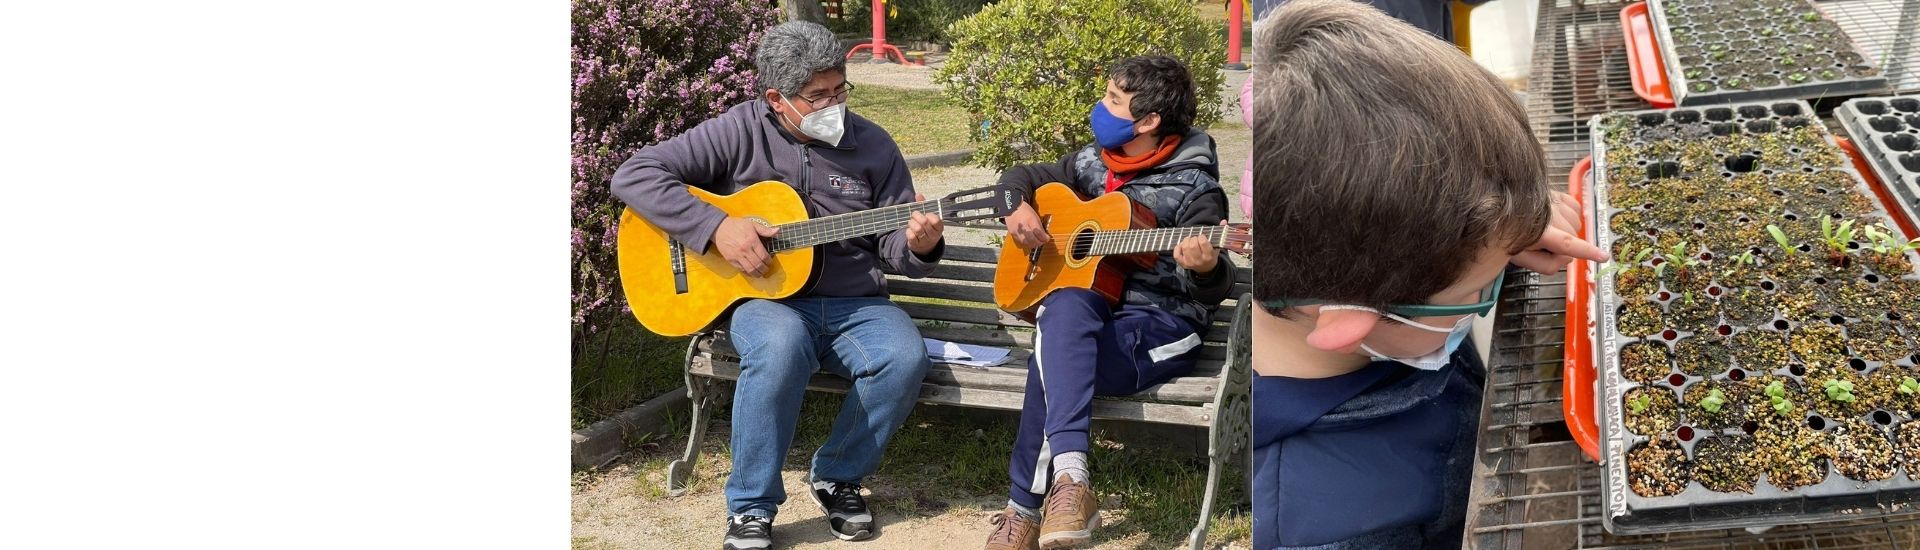 Profesor antonio junto a unos de sus estudiantes tocando la guitarra